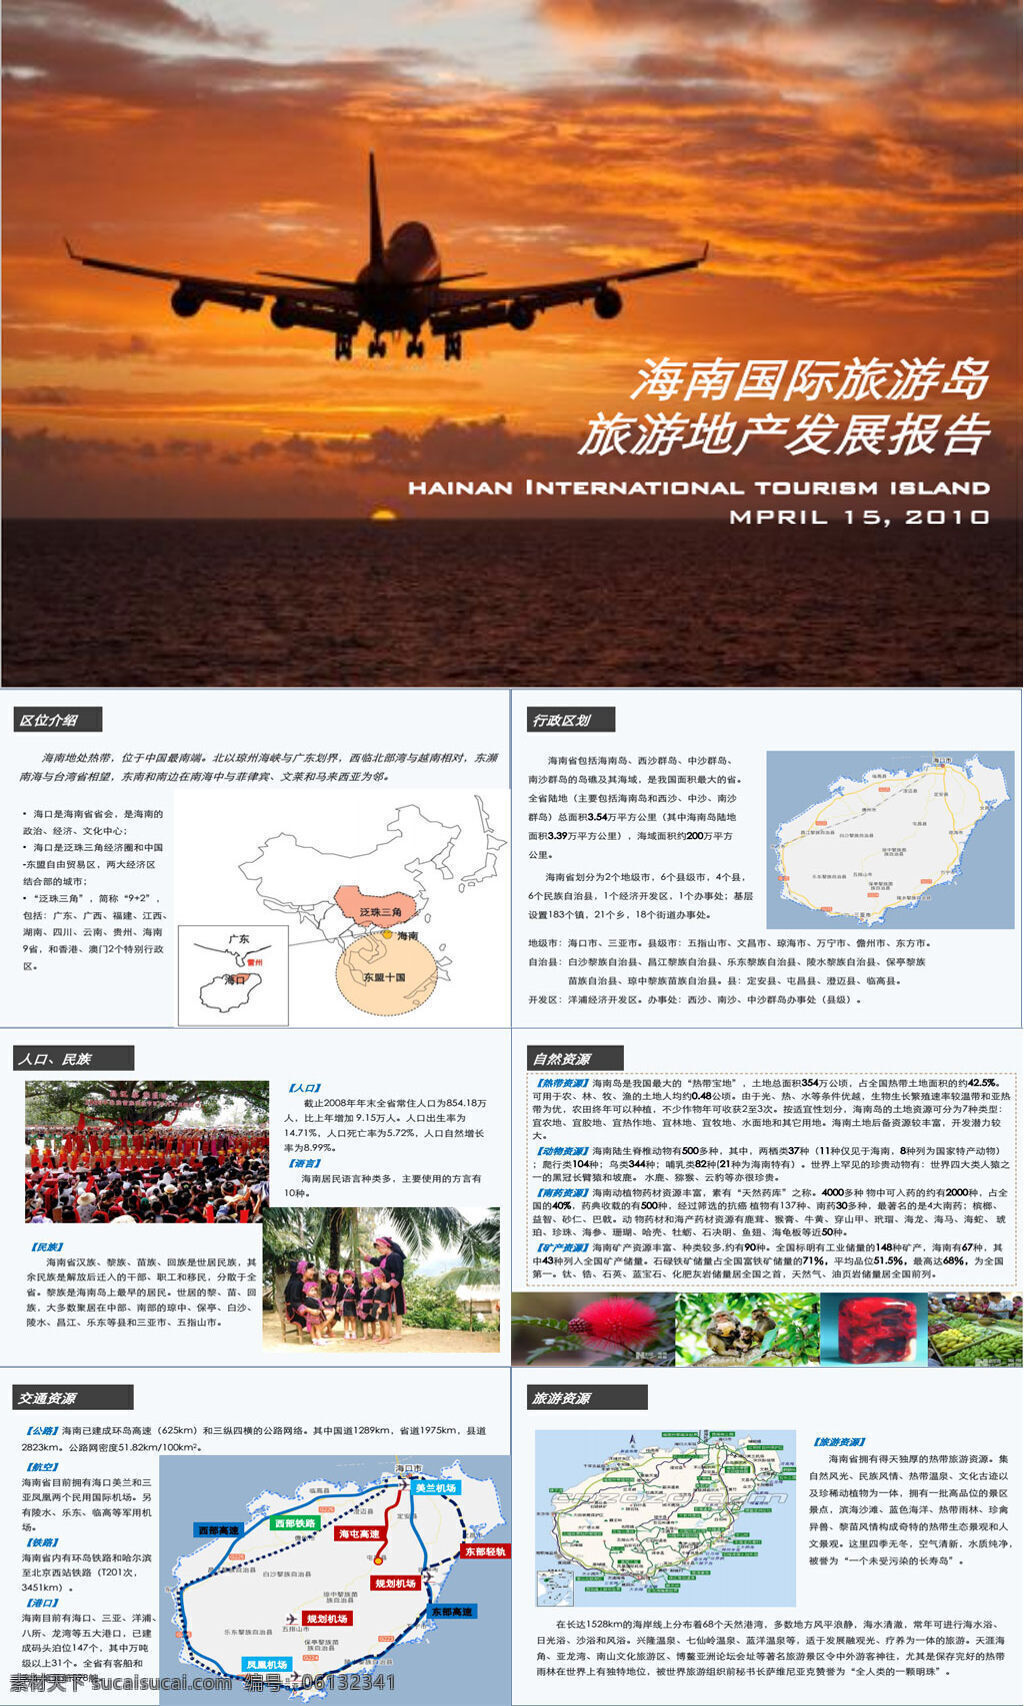 海南 国际旅游 岛 旅游 地产 发展报告 54p 行业数据 专业资料